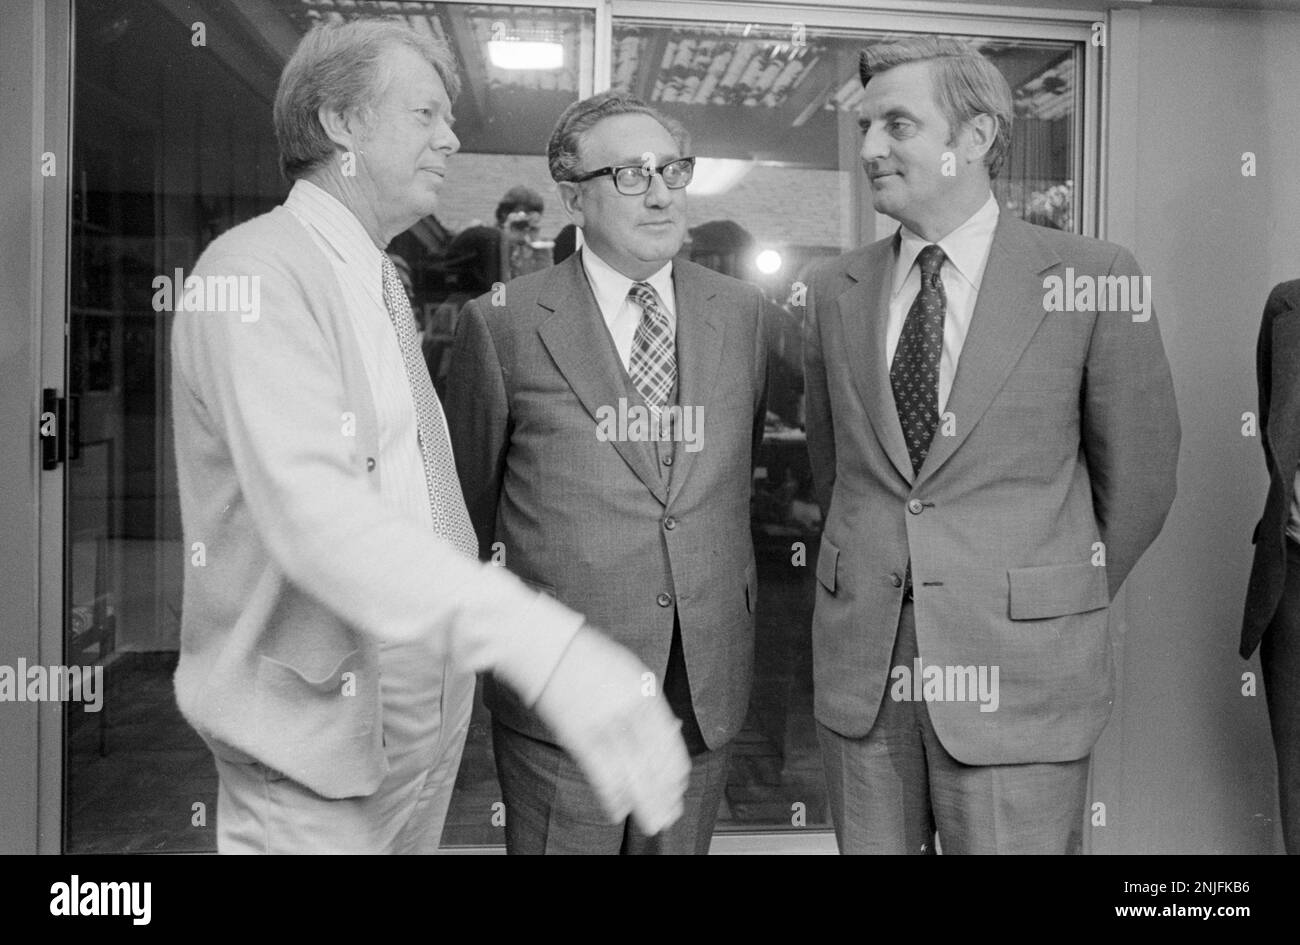 Le président élu, Jimmy carter, et le vice-président élu, Walter Mondale, ont accueilli le secrétaire d'État américain, Henry Kissinger, au domicile de carter à Plains, en Géorgie, pour un exposé sur la politique étrangère. Banque D'Images